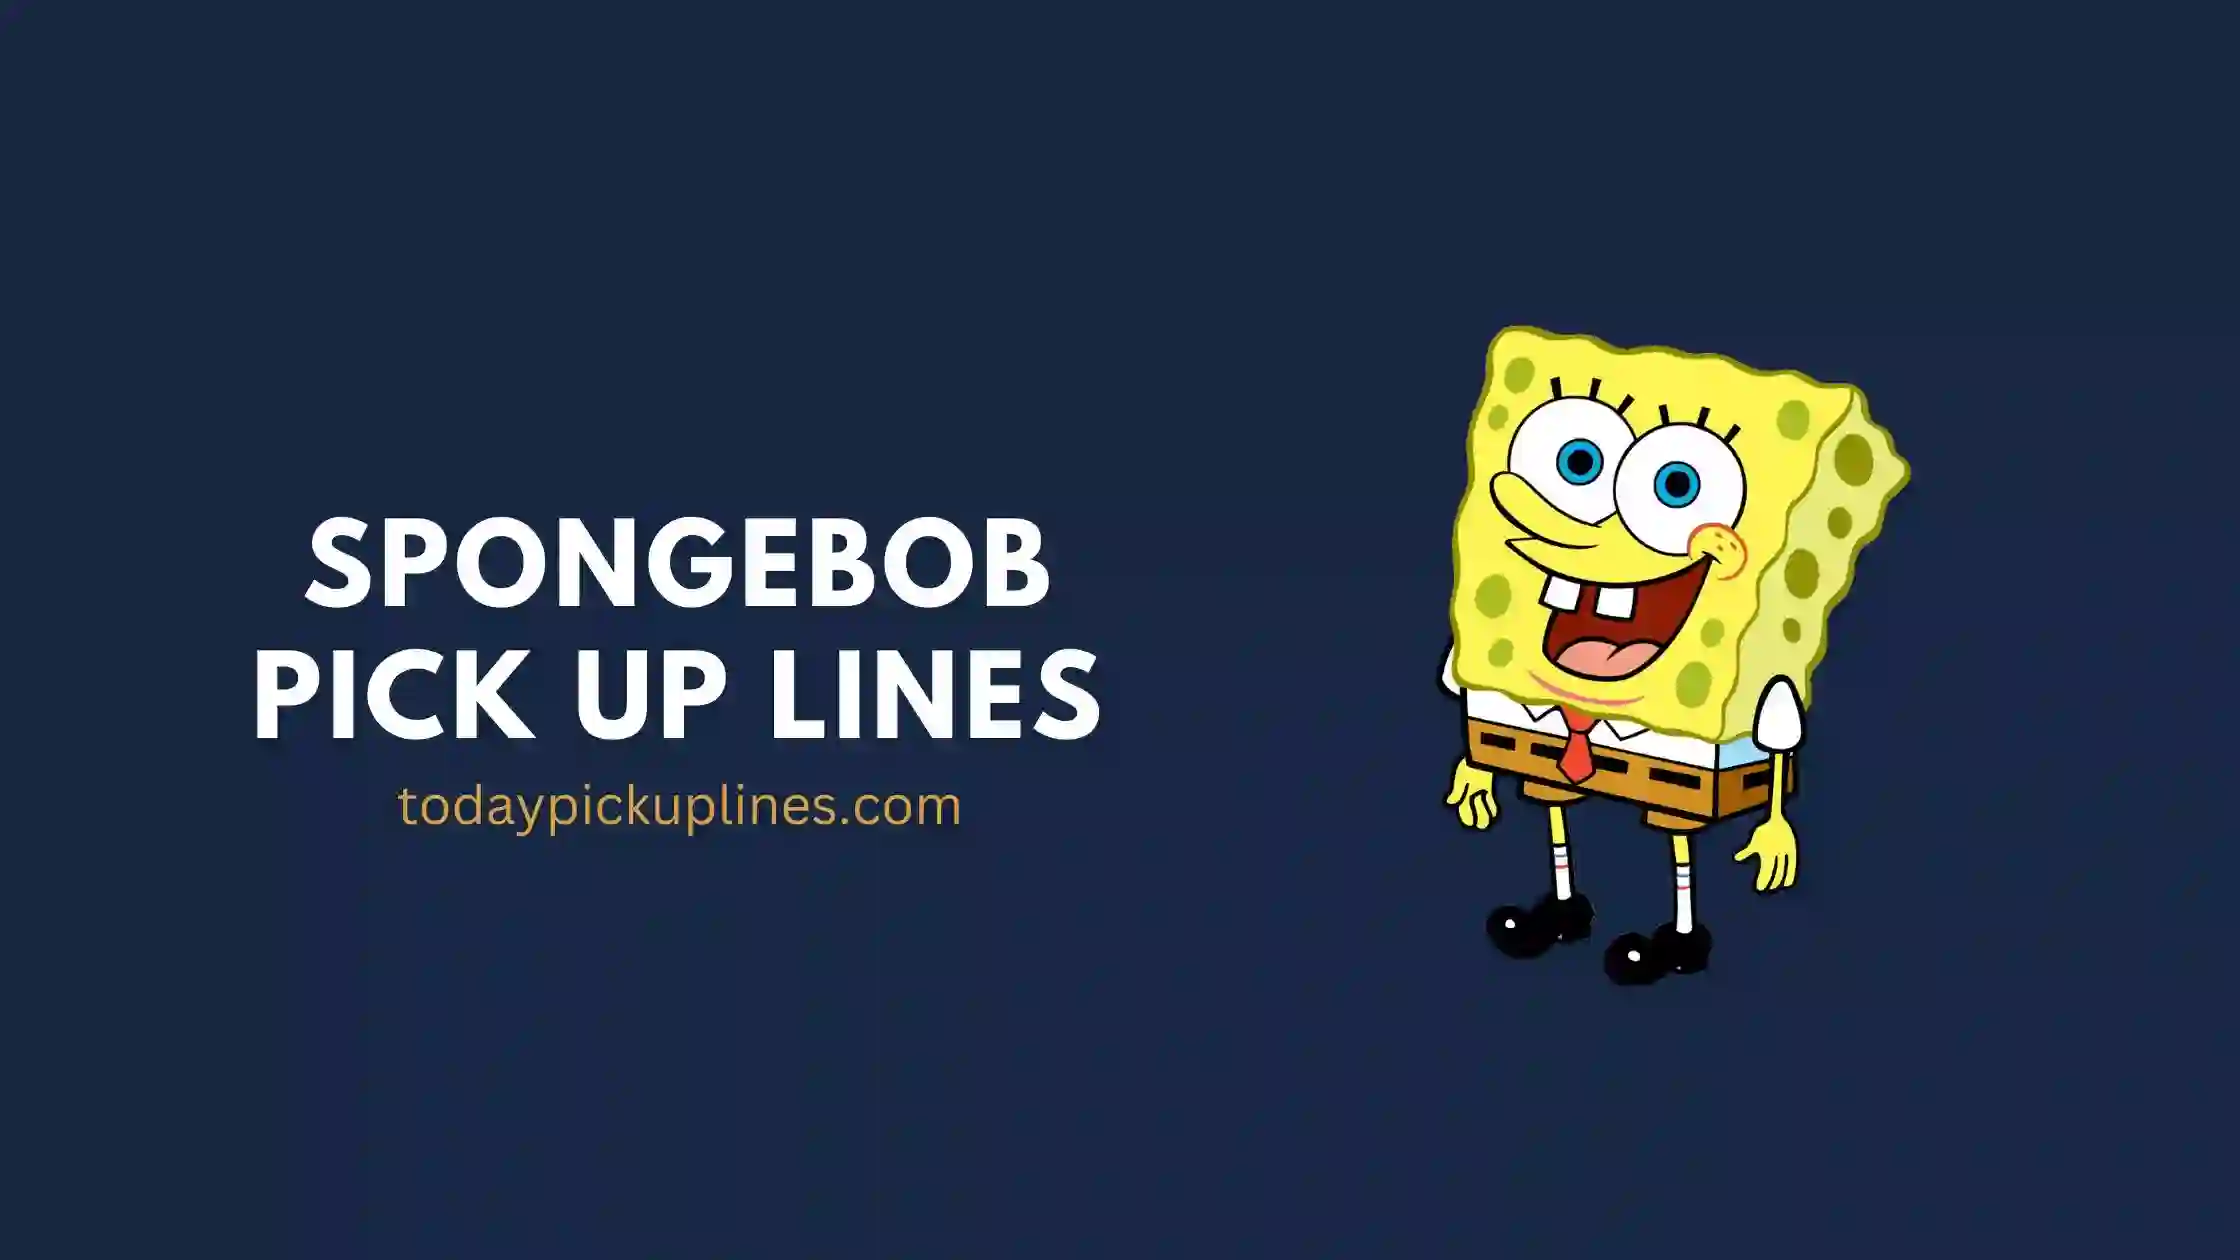 Spongebob Pick Up Lines